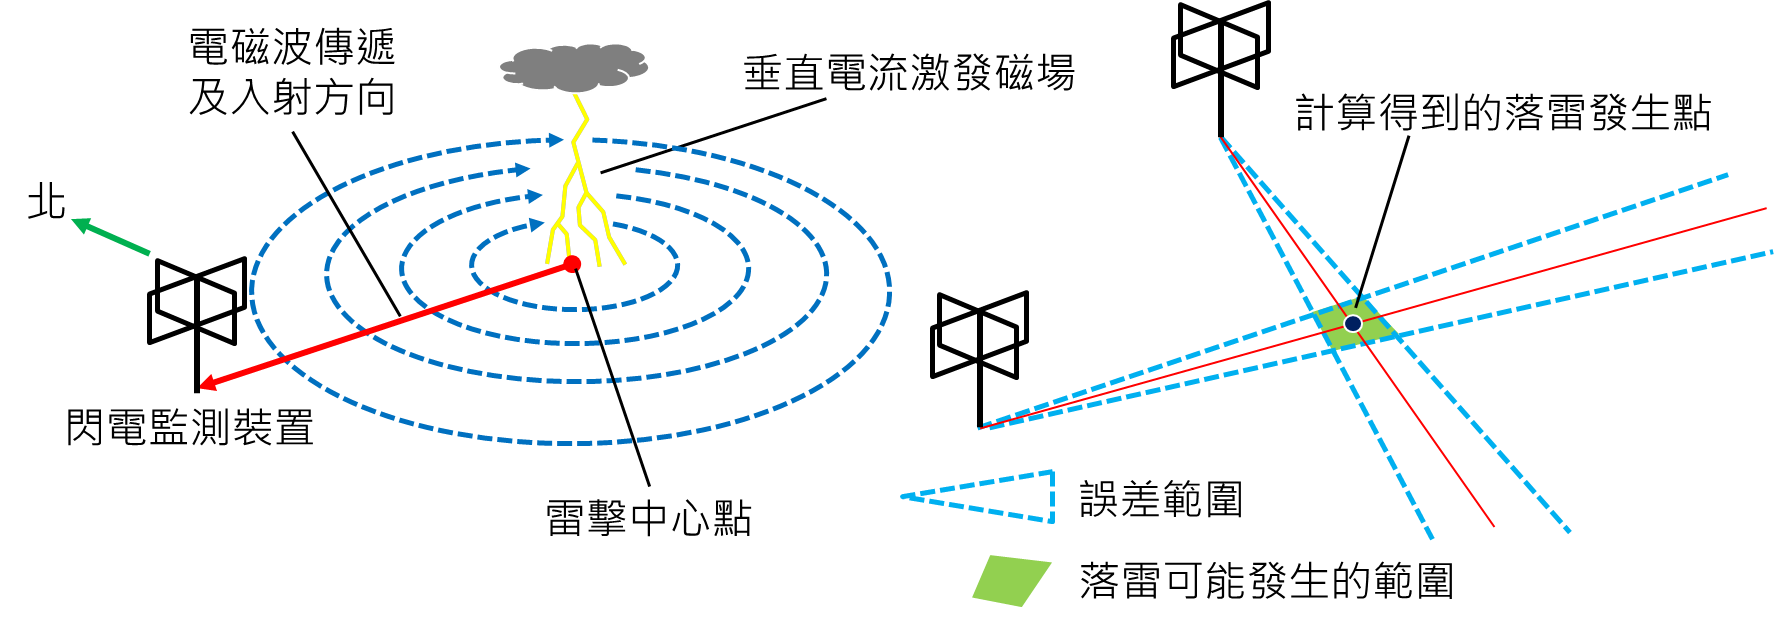 閃電監測系統可由兩組以上的檢測器共同觀測閃電產生的電磁波，再由兩組儀器所測得閃電入射方向延伸的交點得知閃電發生的位置